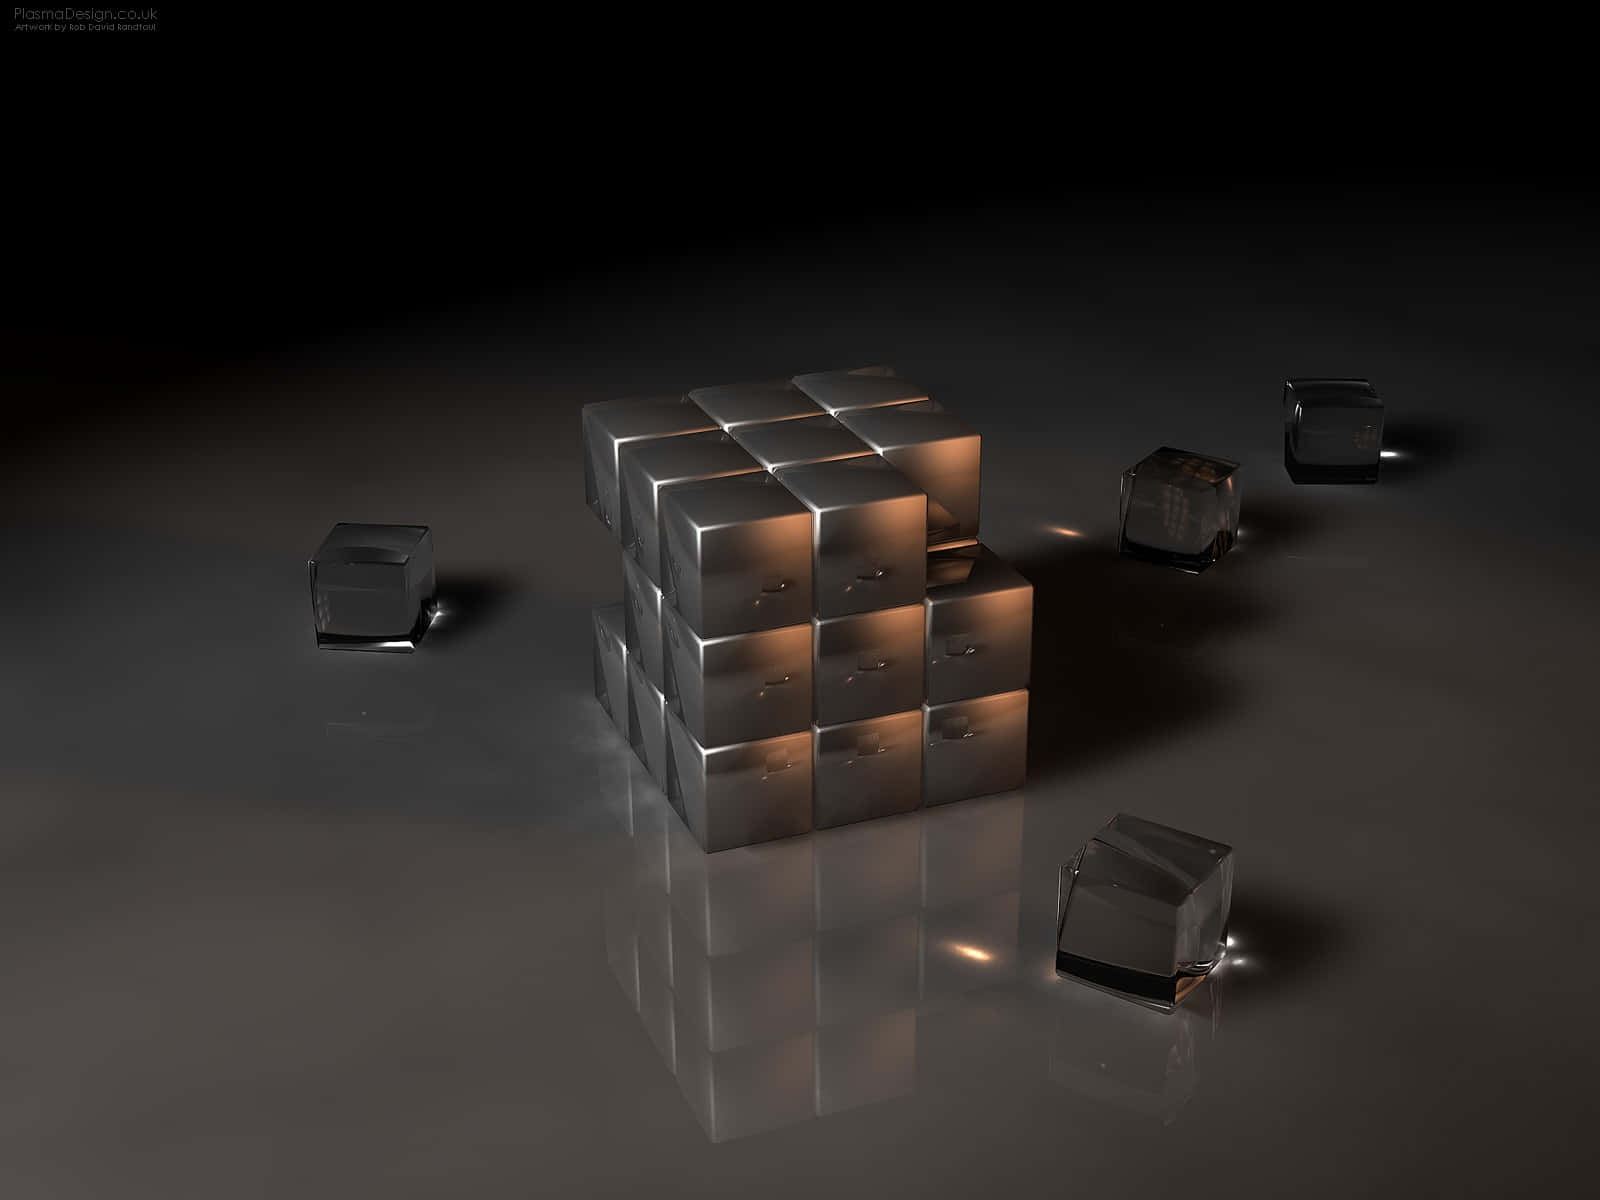 Imágenesde Arte En 3d Interfacelift Cubo De Rubik